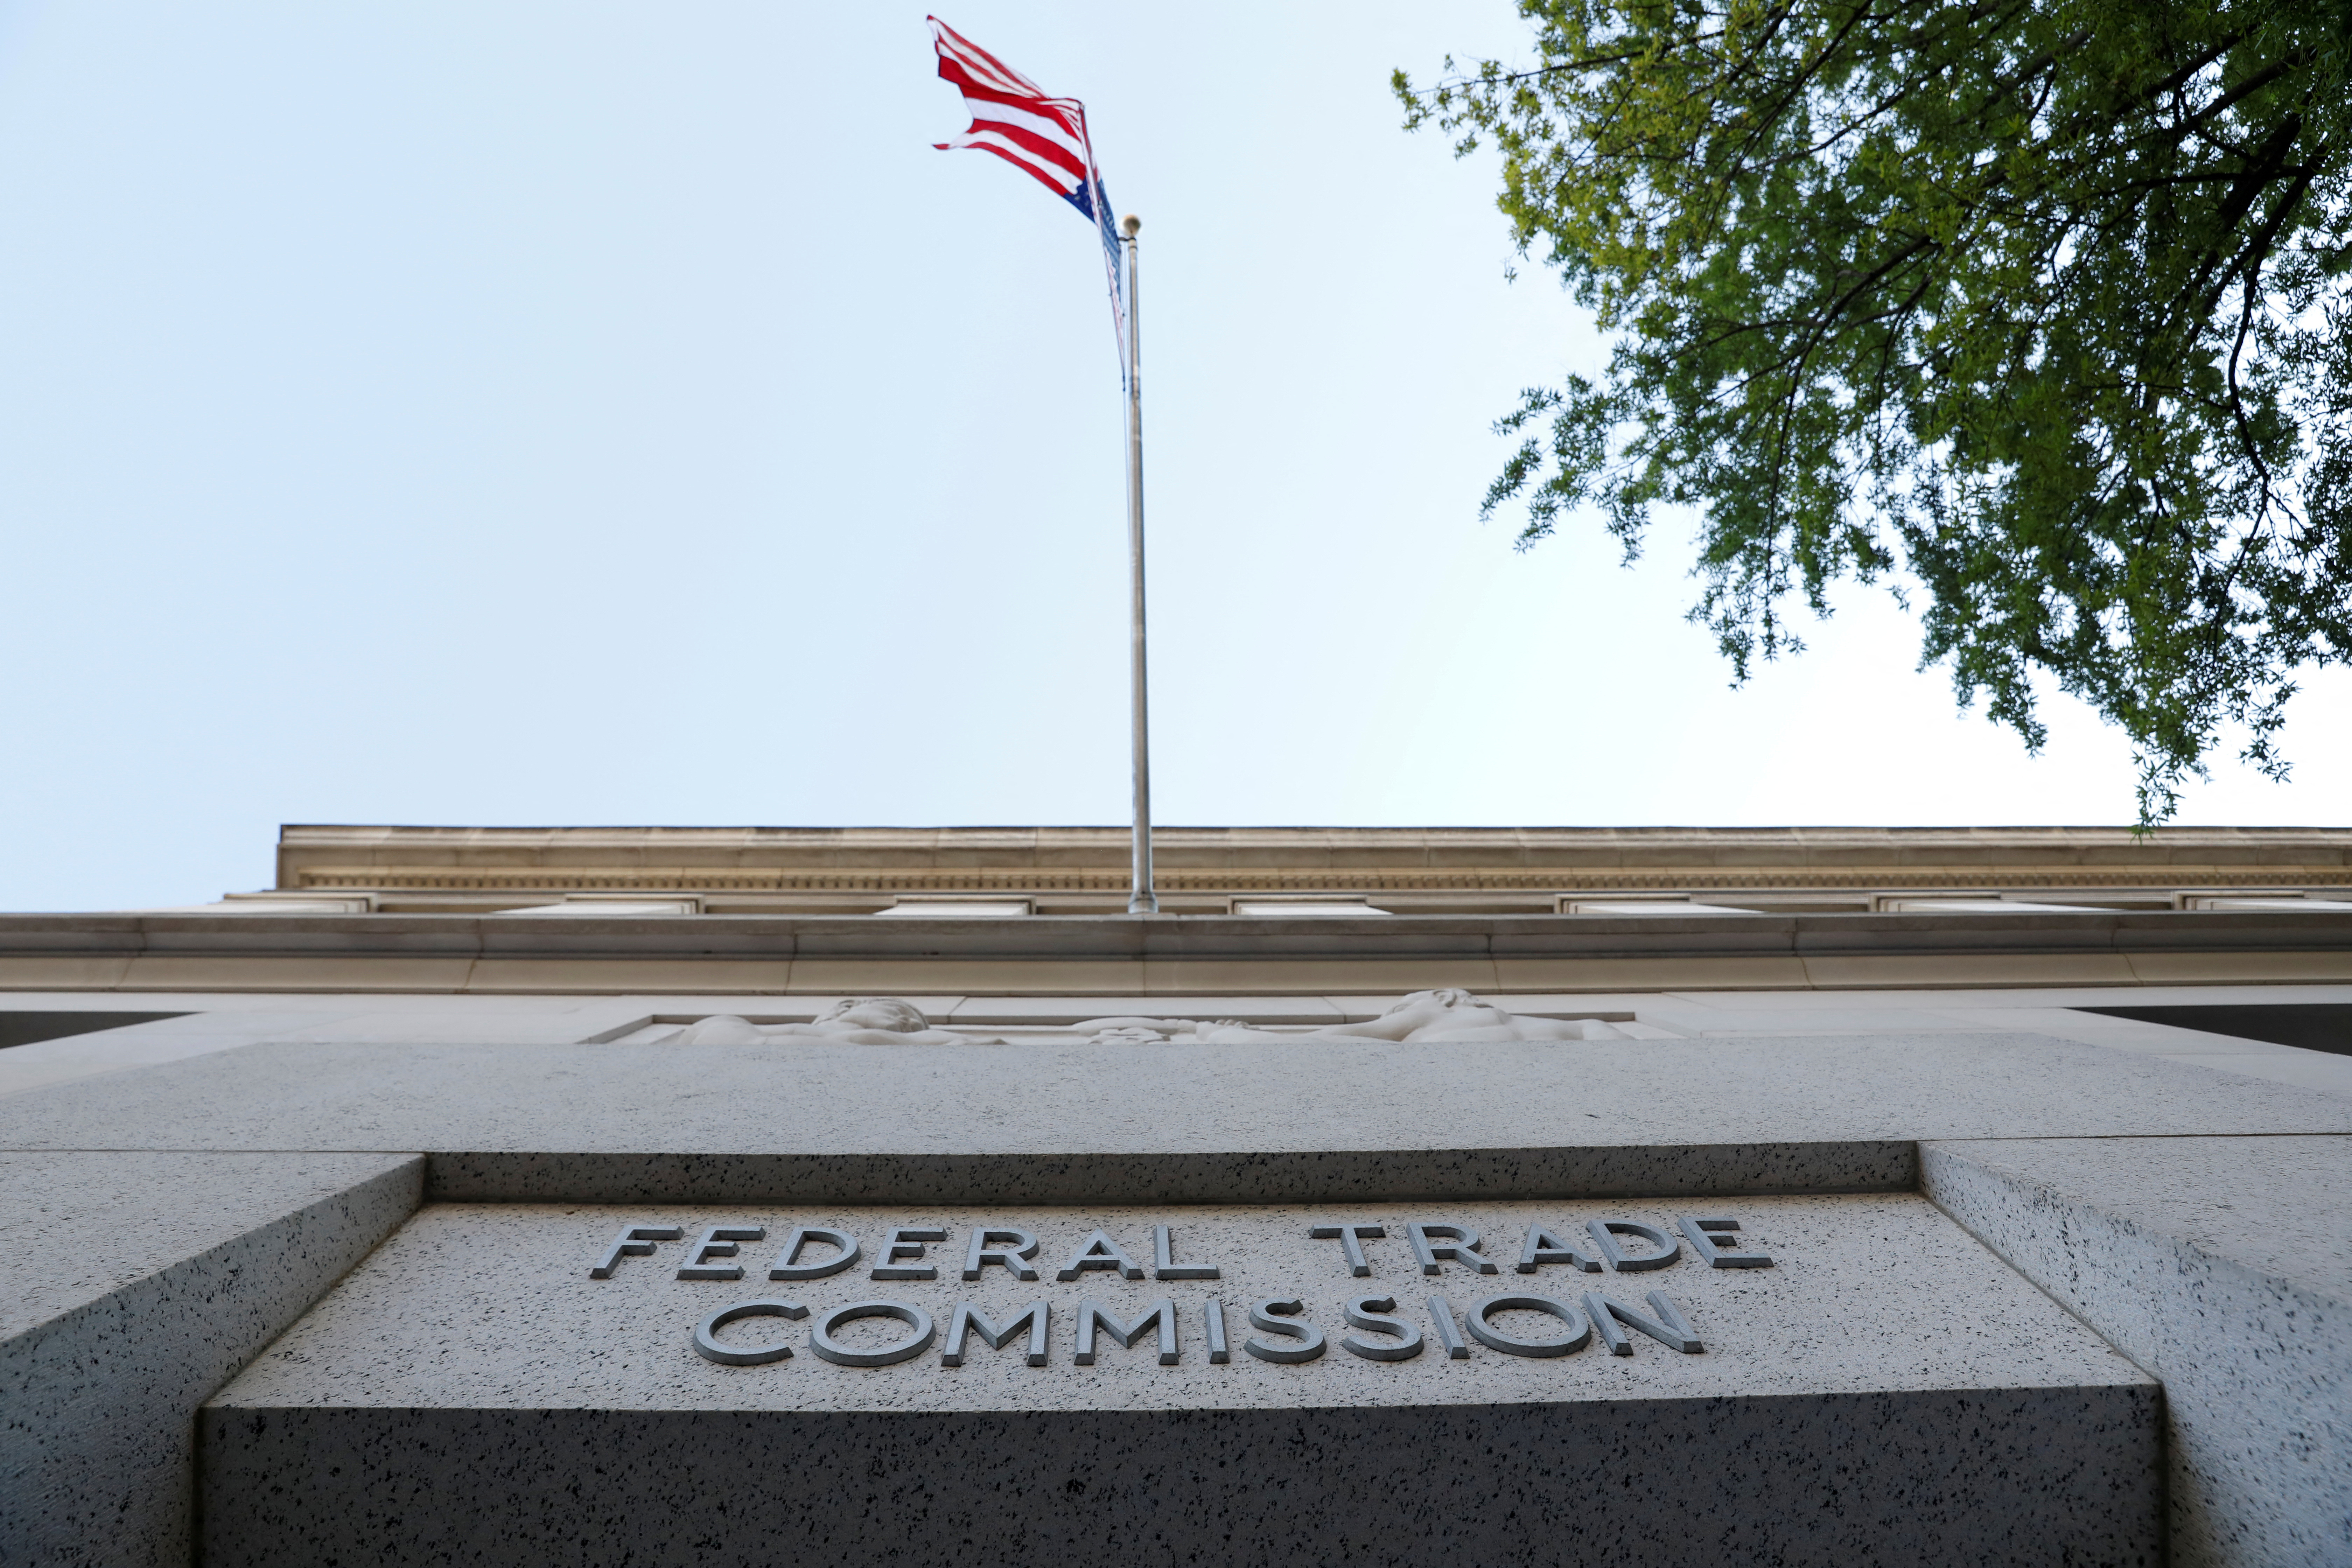 La señalización se puede ver en la sede de la Comisión Federal de Comercio en Washington, DC.